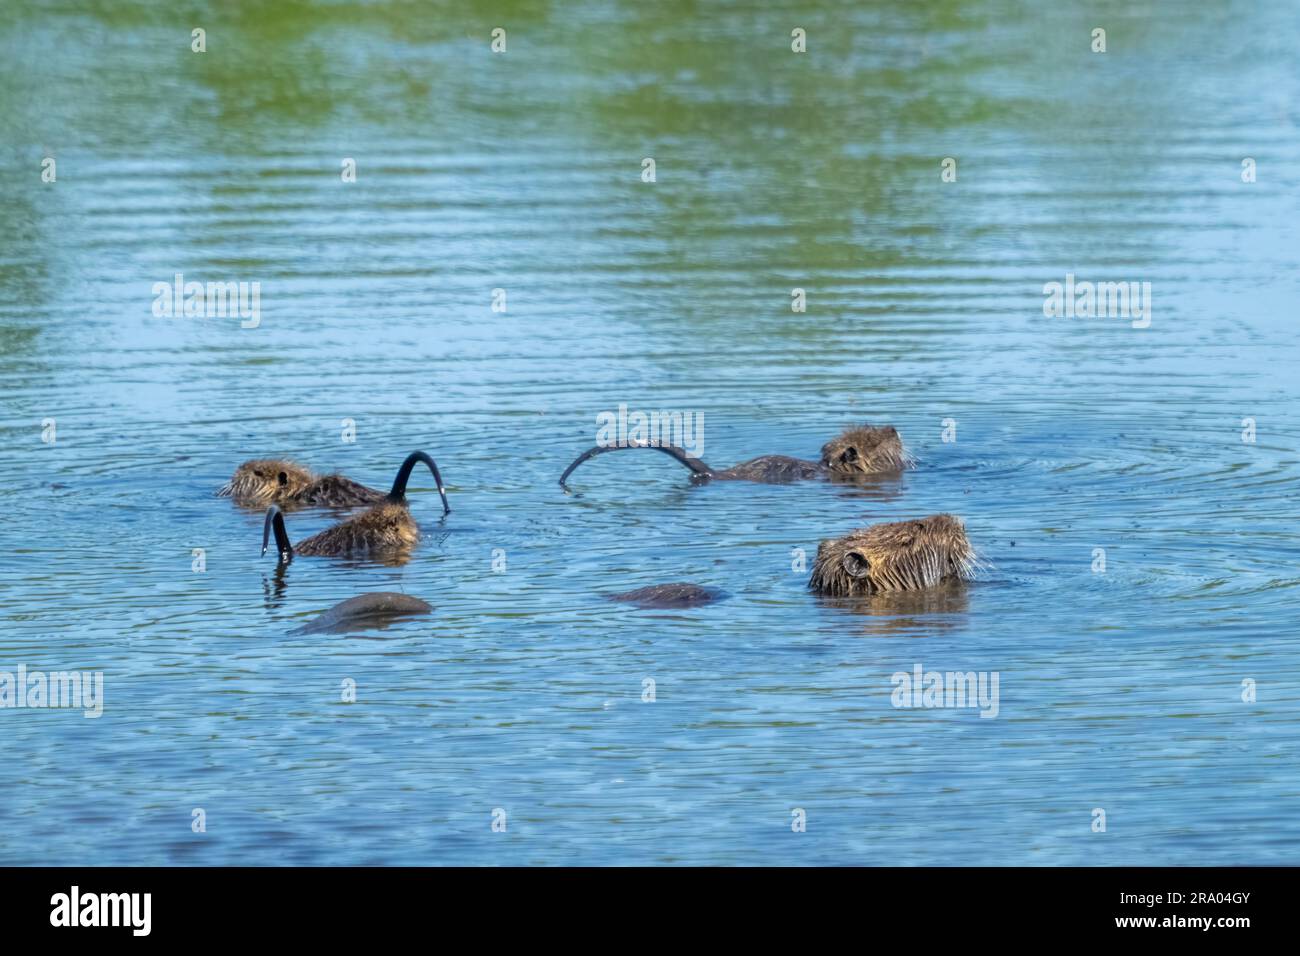 Ridgefield National Wildlife refuge, Ridgefield, Washington, États-Unis. Mère et bébé nutria avec queues surélevées, nageant dans un étang Banque D'Images